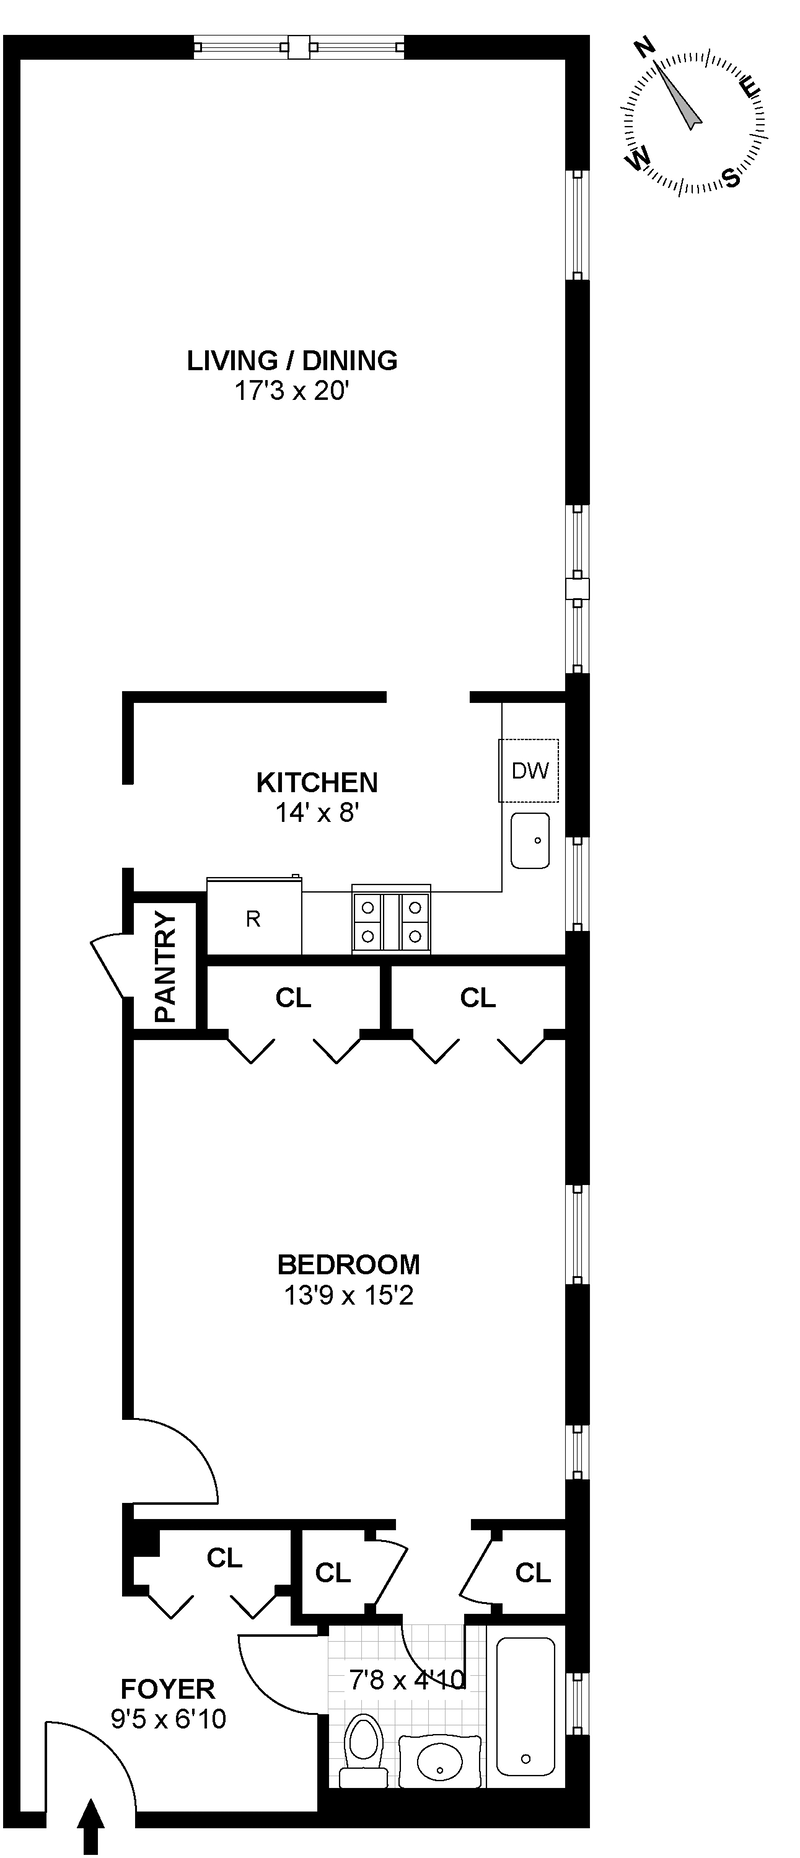 Floorplan for 2787 Kennedy Blvd, 213J